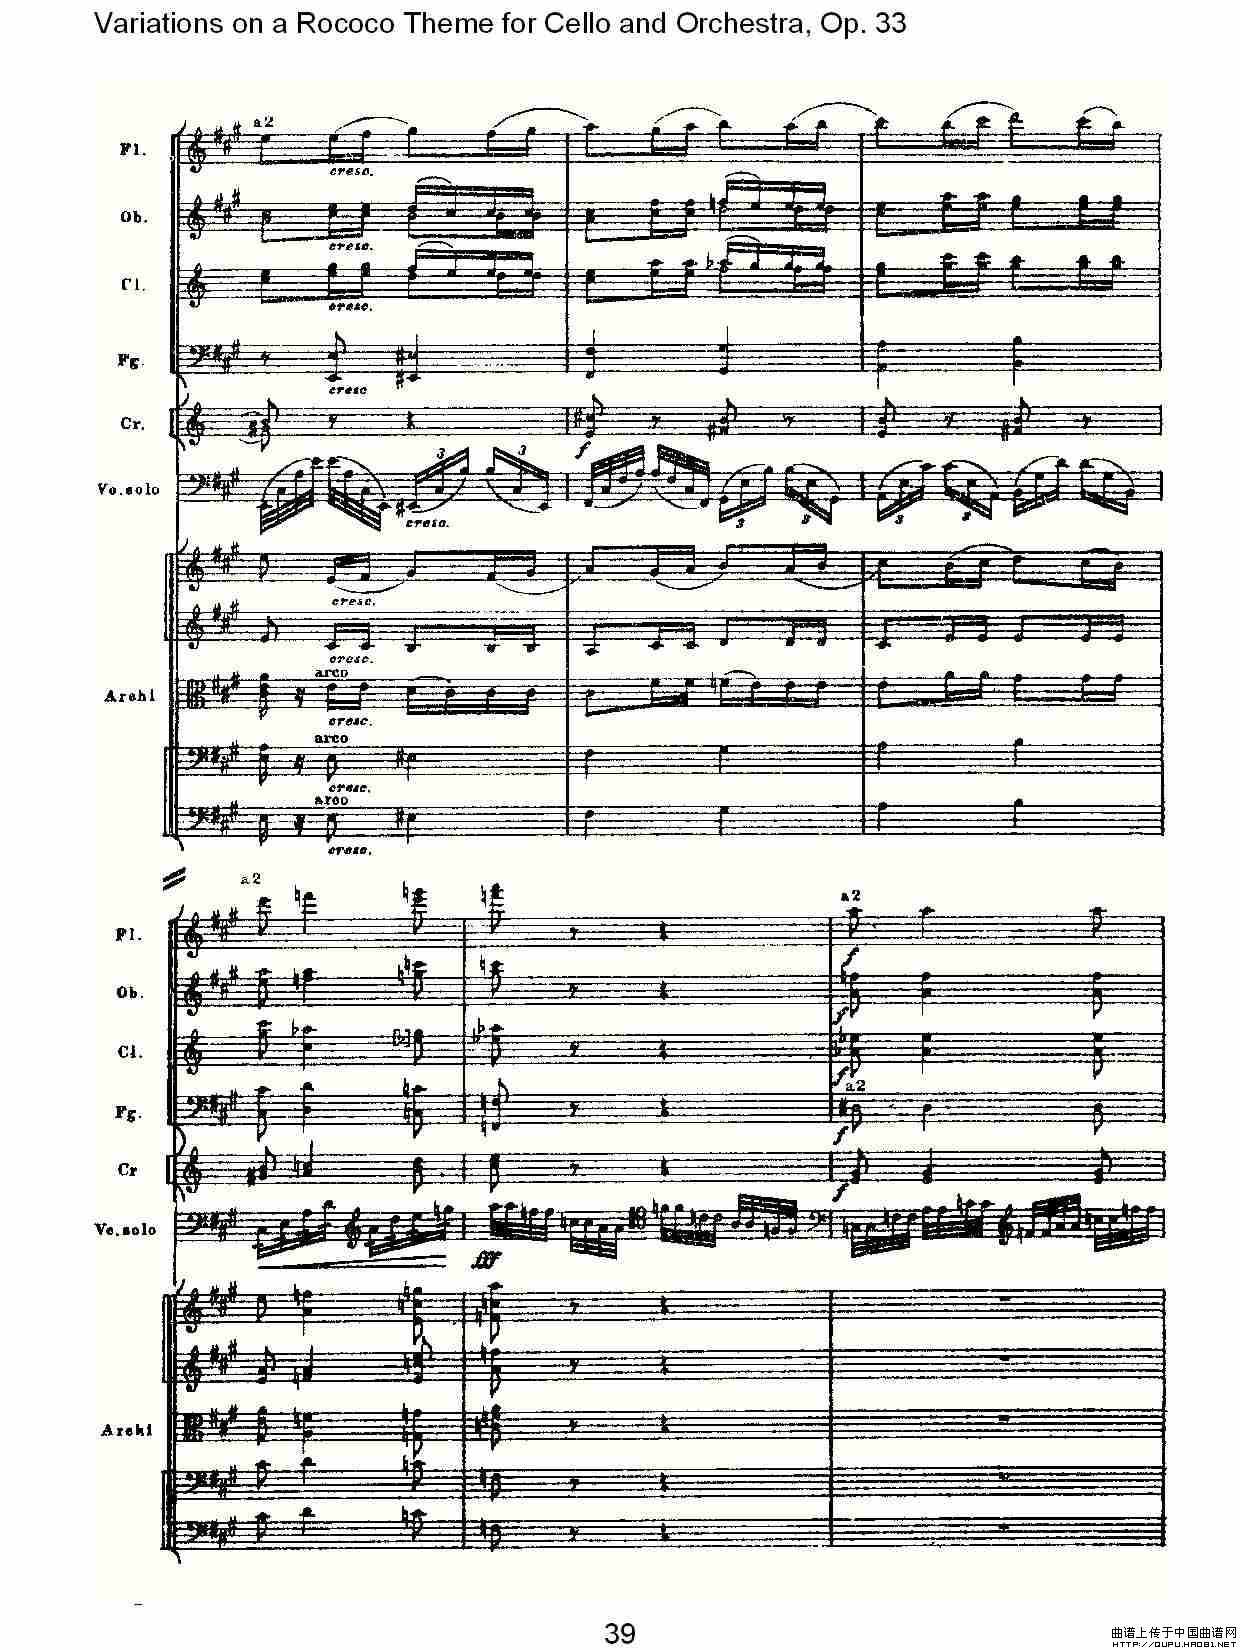 大提琴与管弦乐洛可可主题a小调变奏曲, Op.33（二